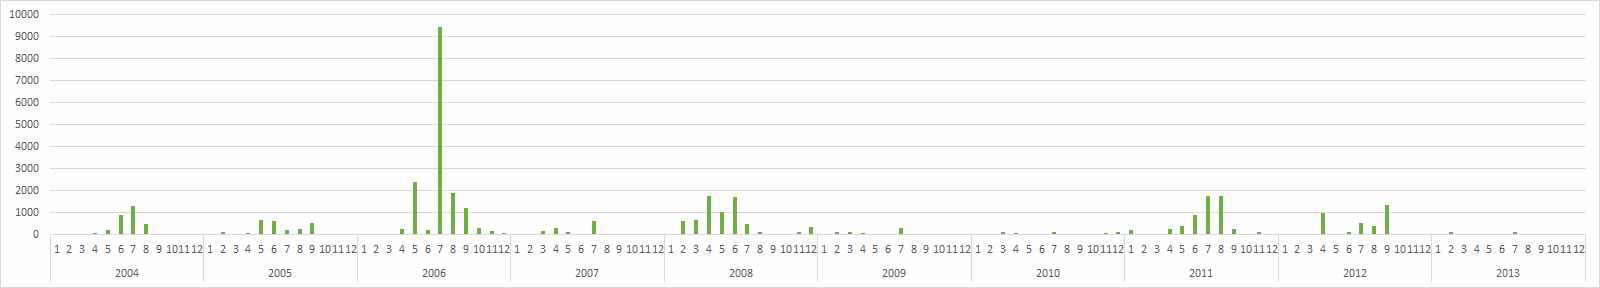 환경부 수질측정망 (물금)의 최근 10년간 총대장균군 분포